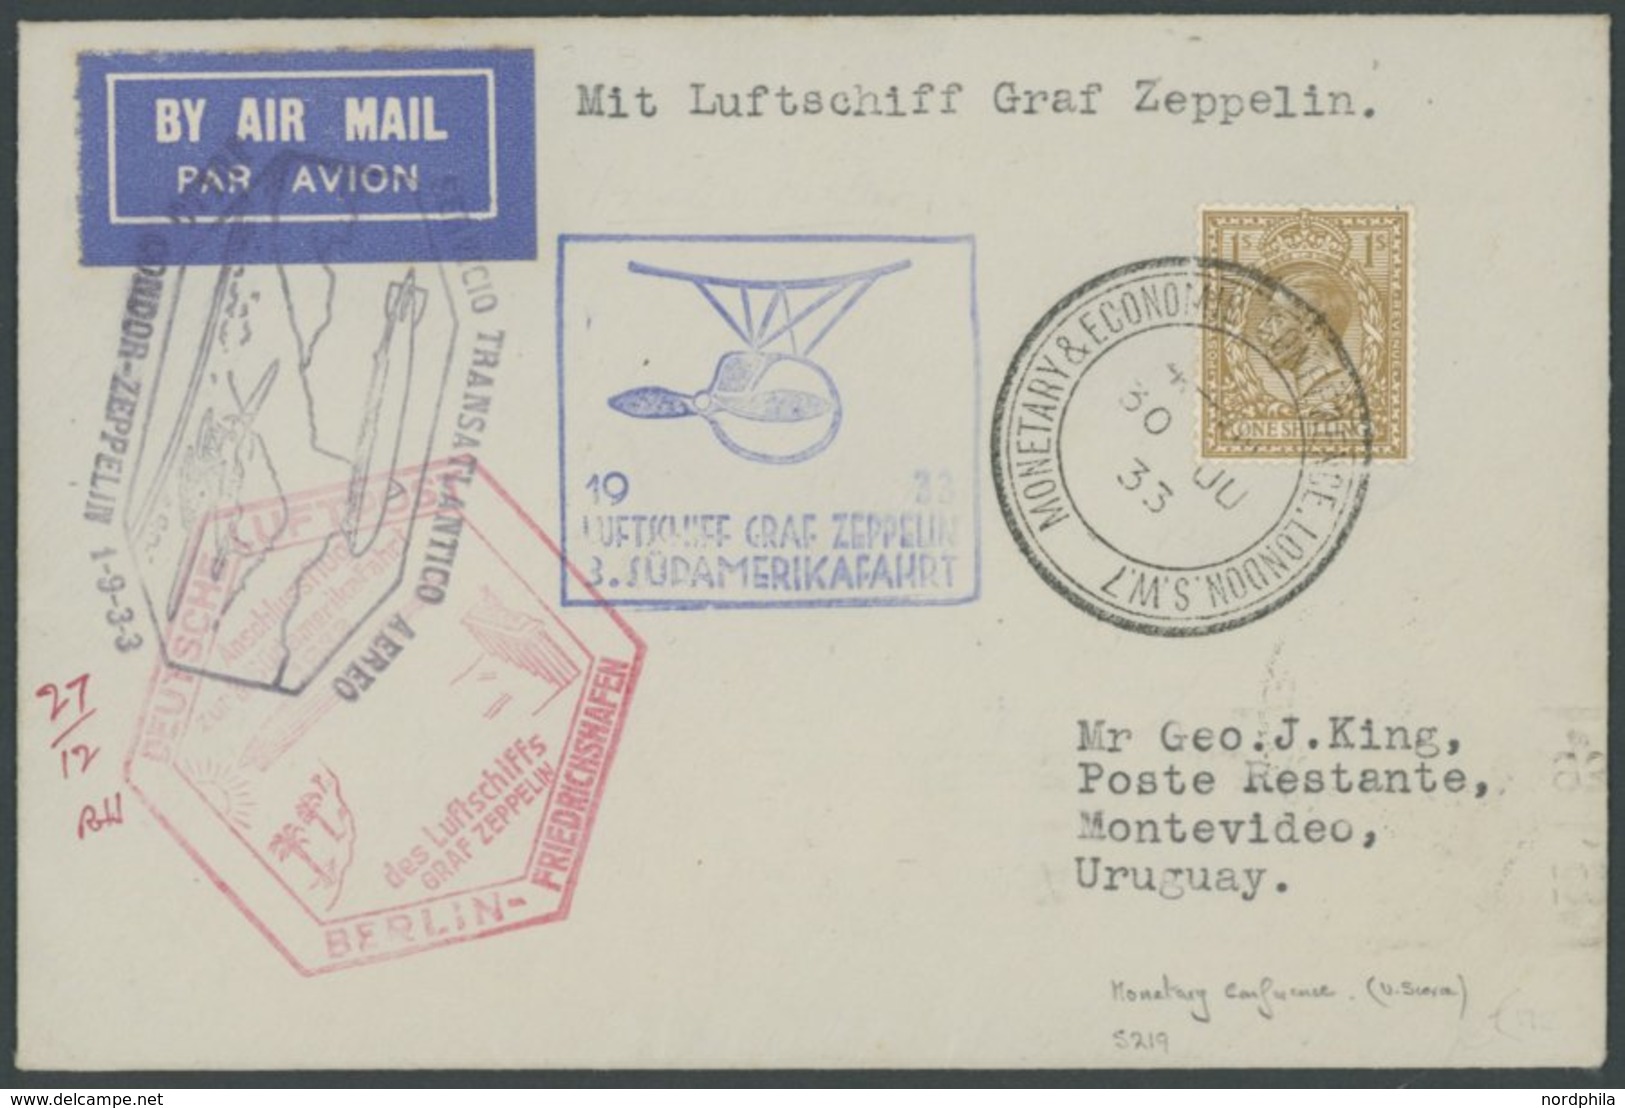 ZULEITUNGSPOST 219B BRIEF, Großbritannien: 1933, 3. Südamerikafahrt, Anschlussflug Ab Berlin, Mit Seltenem Sonderstempel - Airmail & Zeppelin